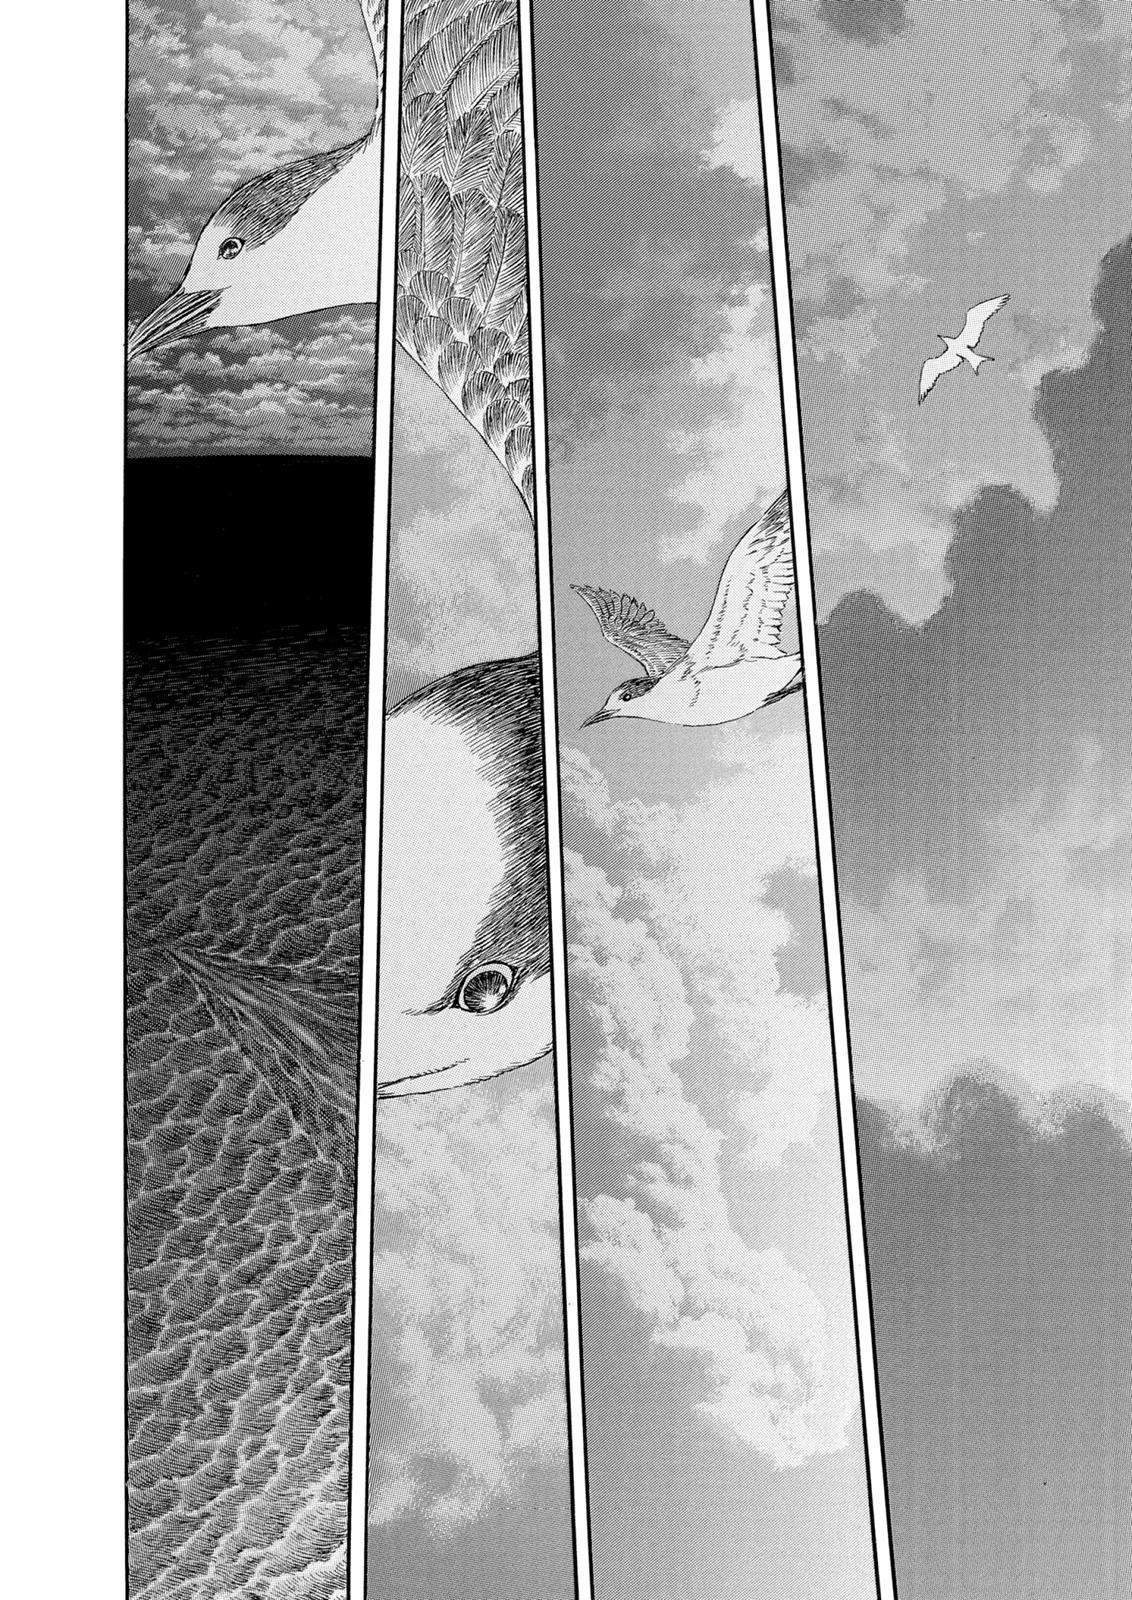 Berserk Manga Chapter 308 image 06